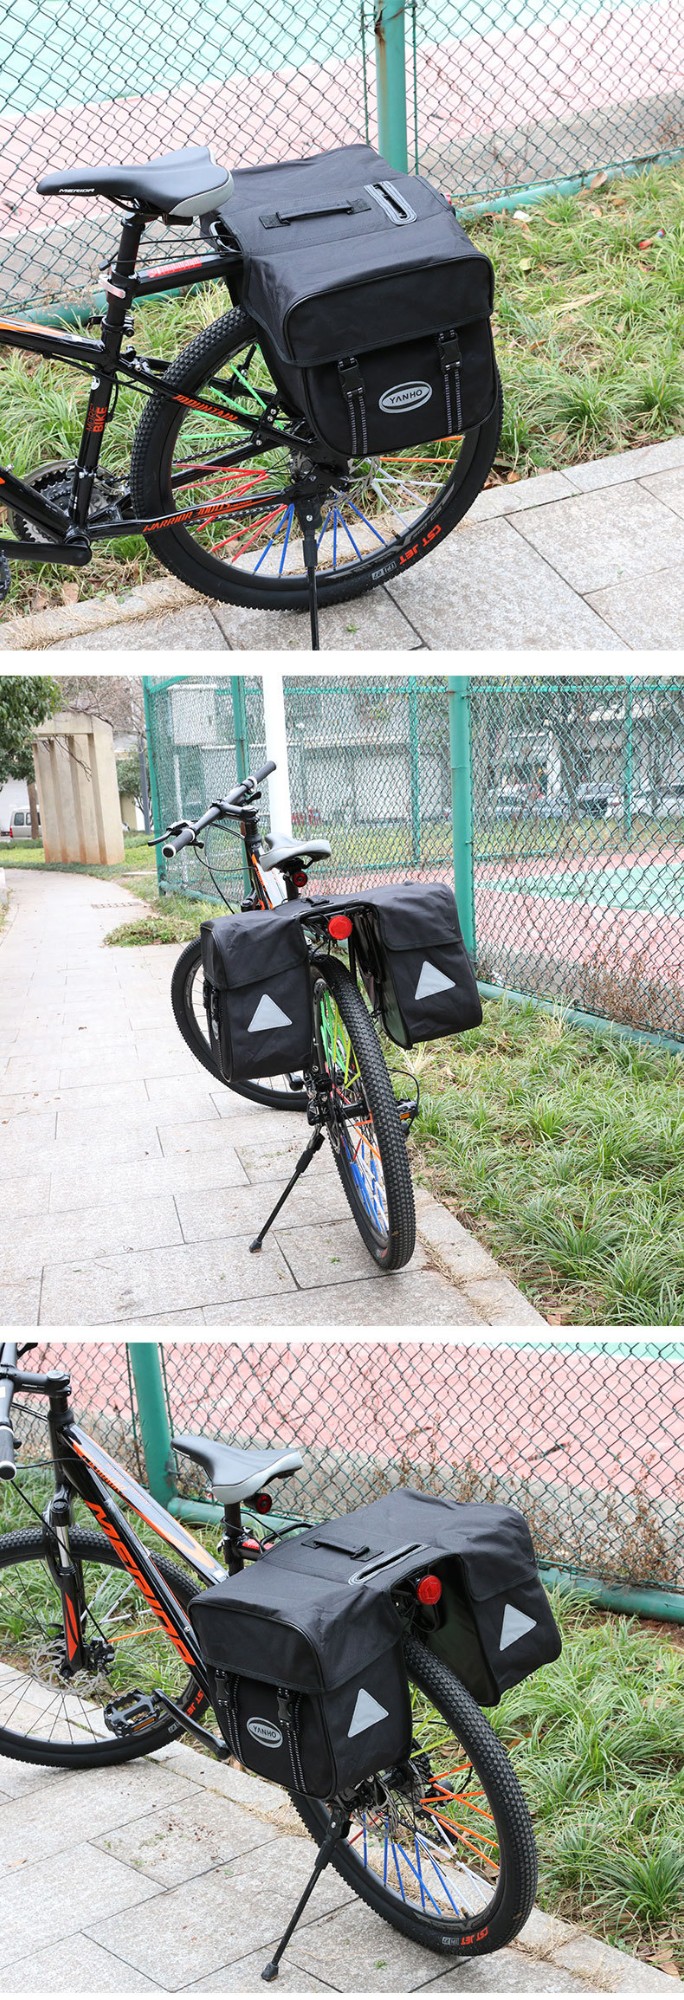 Bicycle Bag BC-BG175